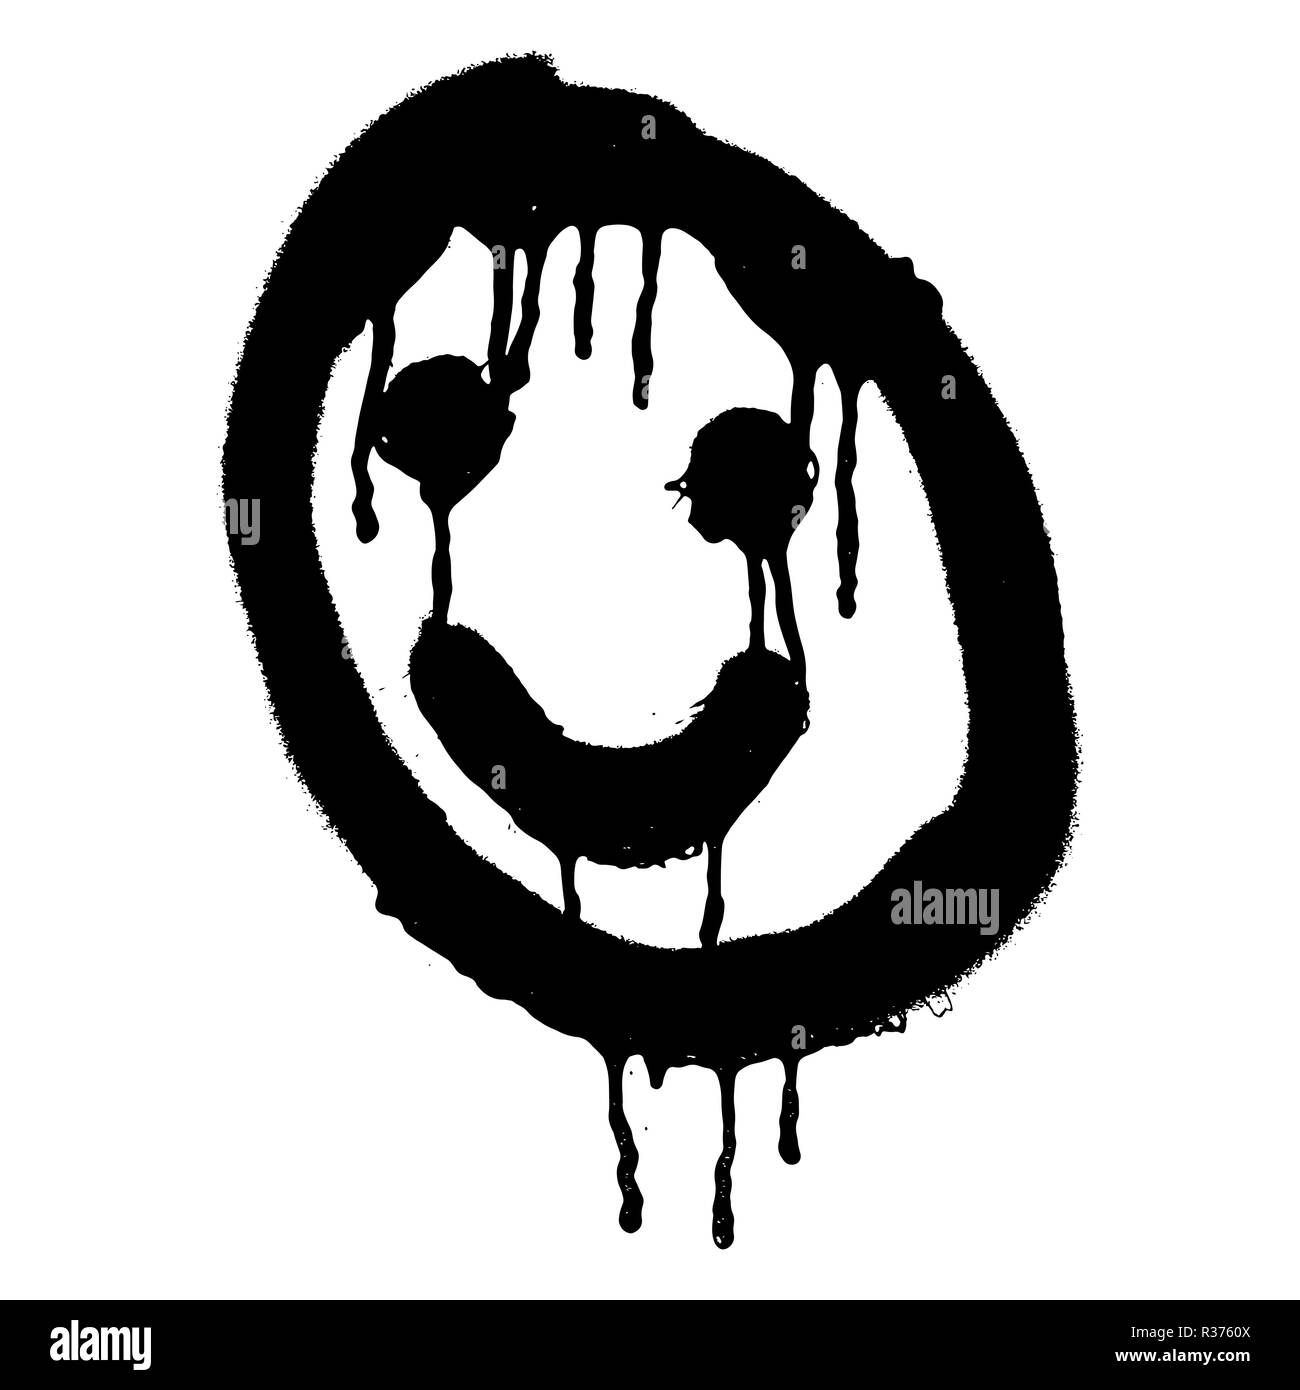 Graffiti grunge gli Emoji con nero ond colore bianco Illustrazione Vettoriale